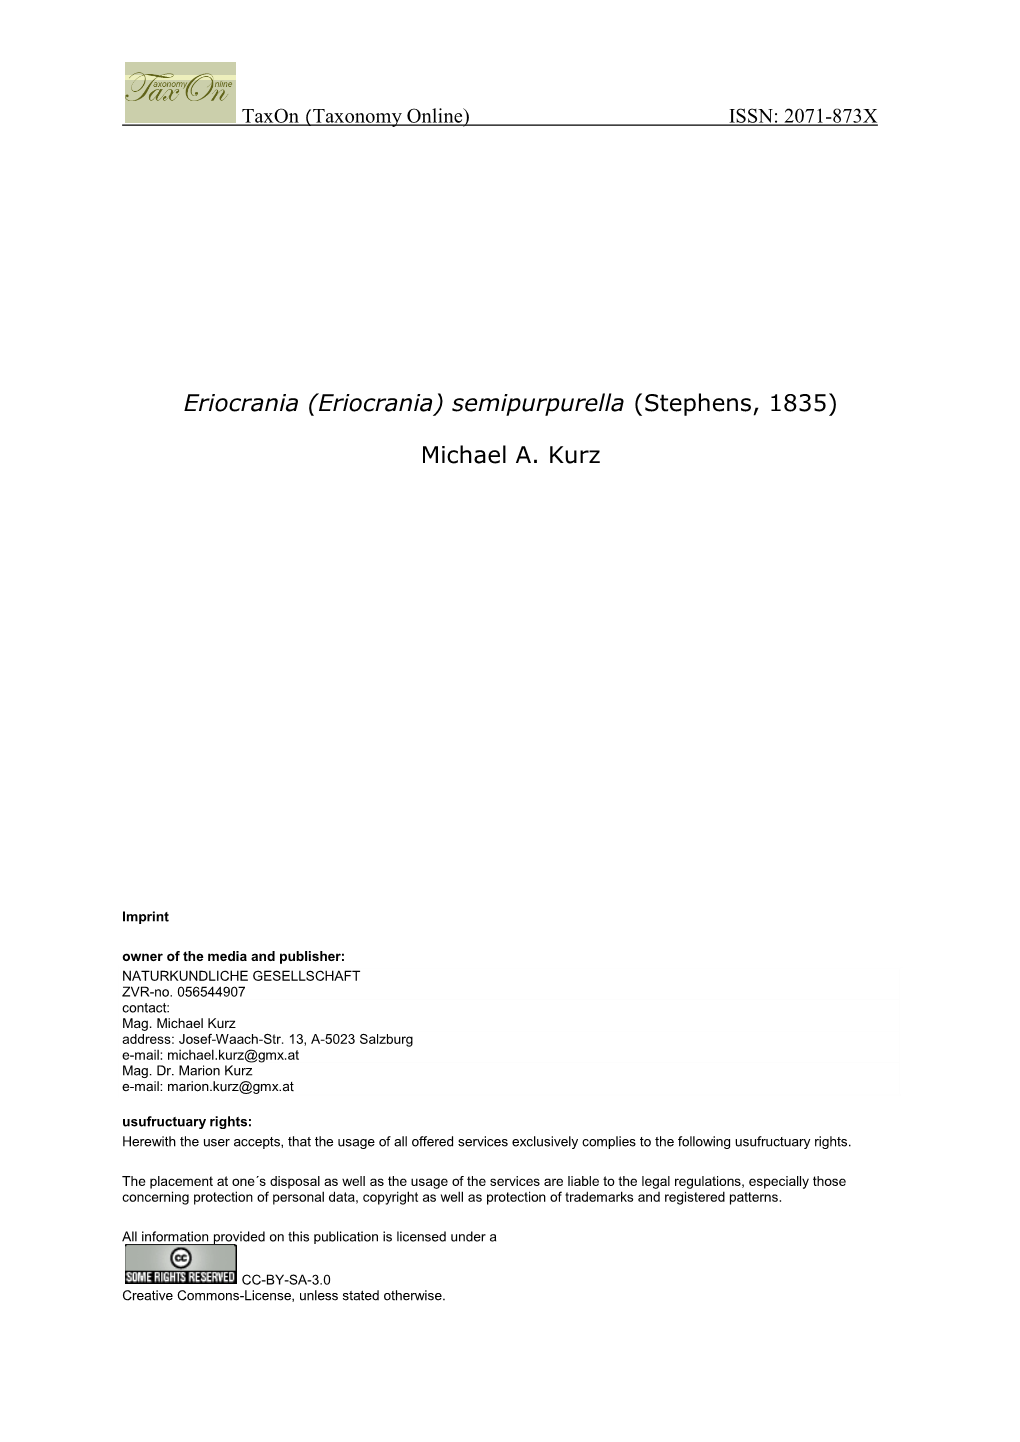 Eriocrania) Semipurpurella (Stephens, 1835